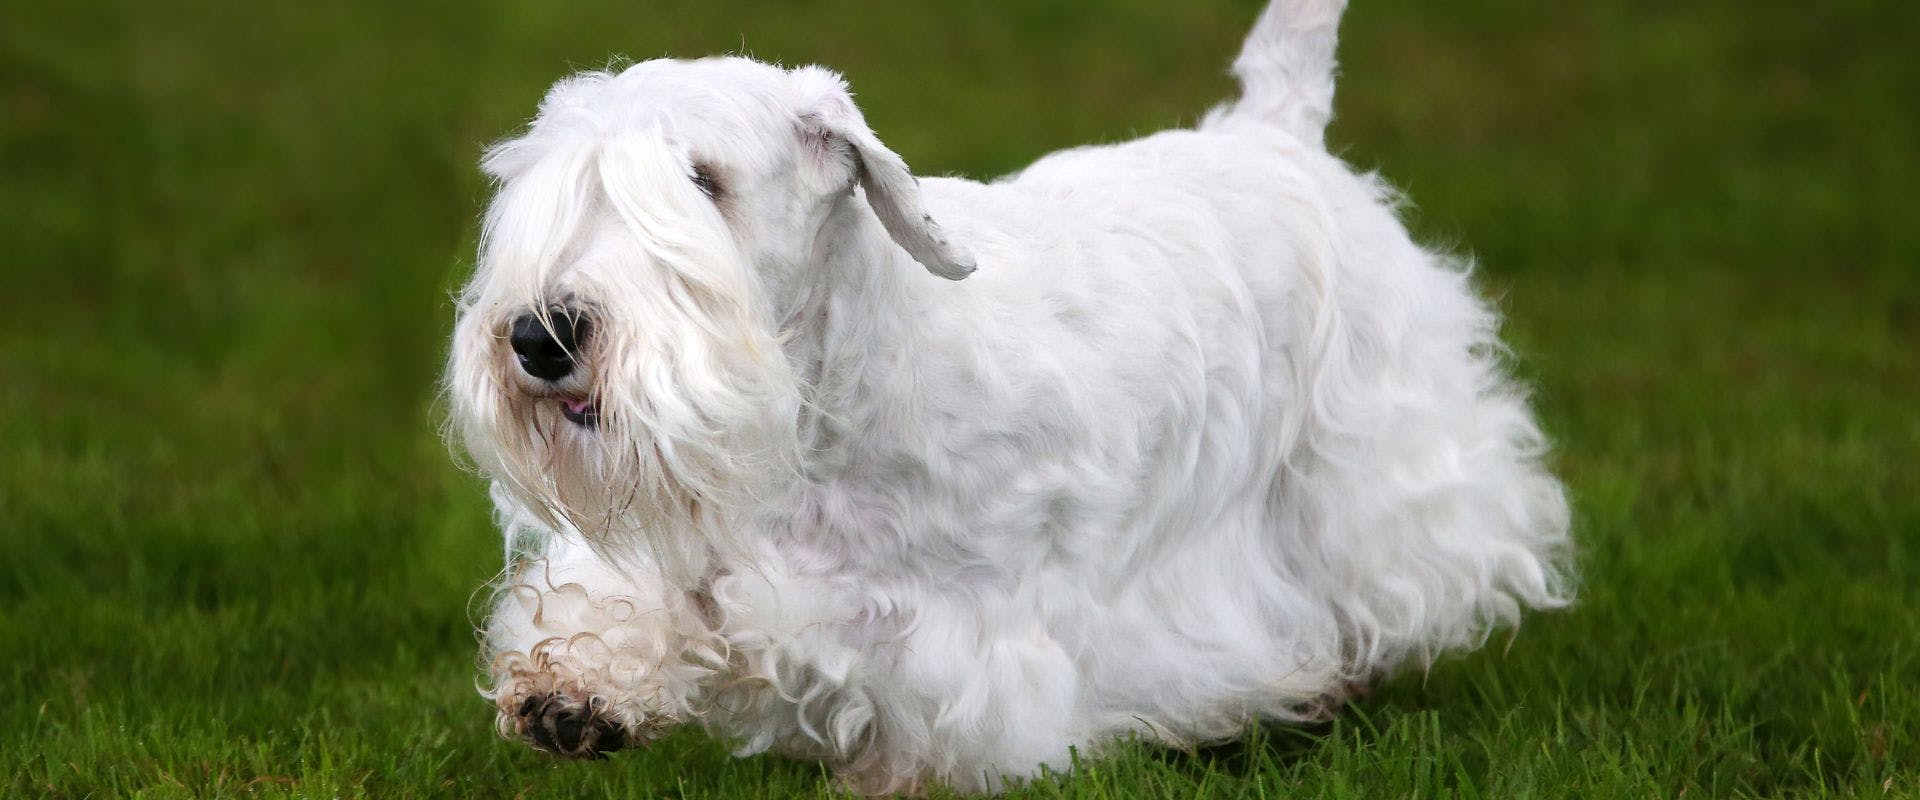 Sealyham Terrier on grass